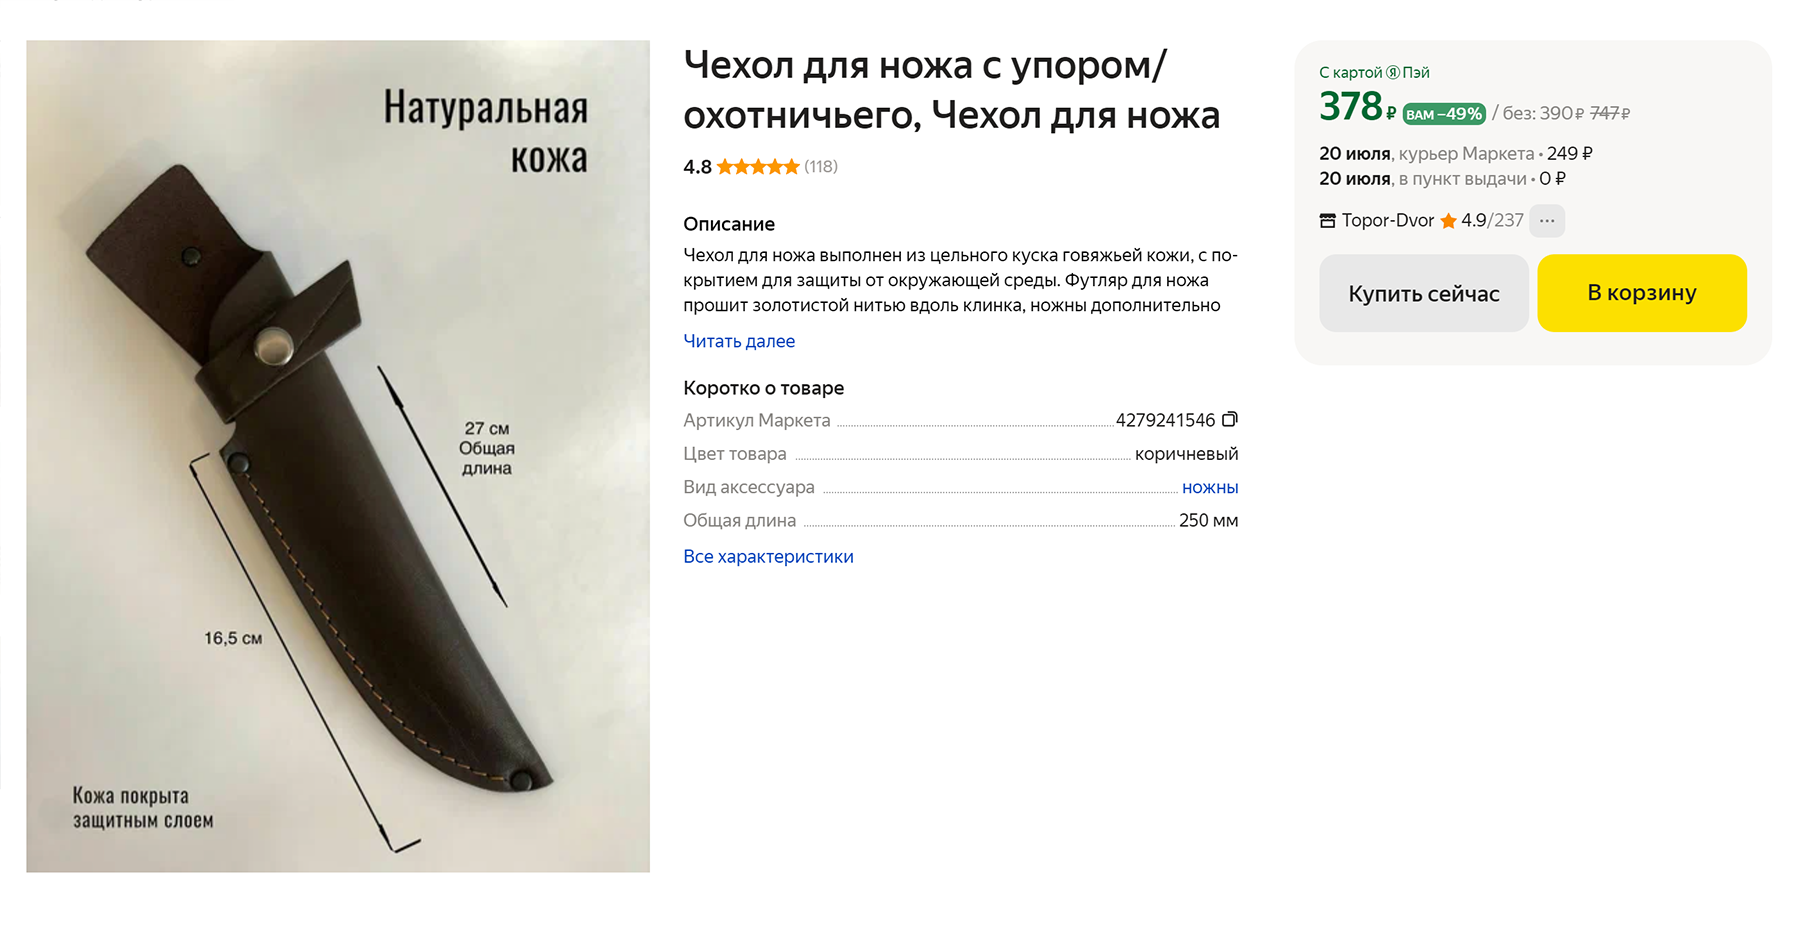 Охотничий нож лучше хранить в чехле, чтобы уберечь клинок от затупления. Цена разная — от 350 до 2000 ₽. Источник: market.yandex.ru